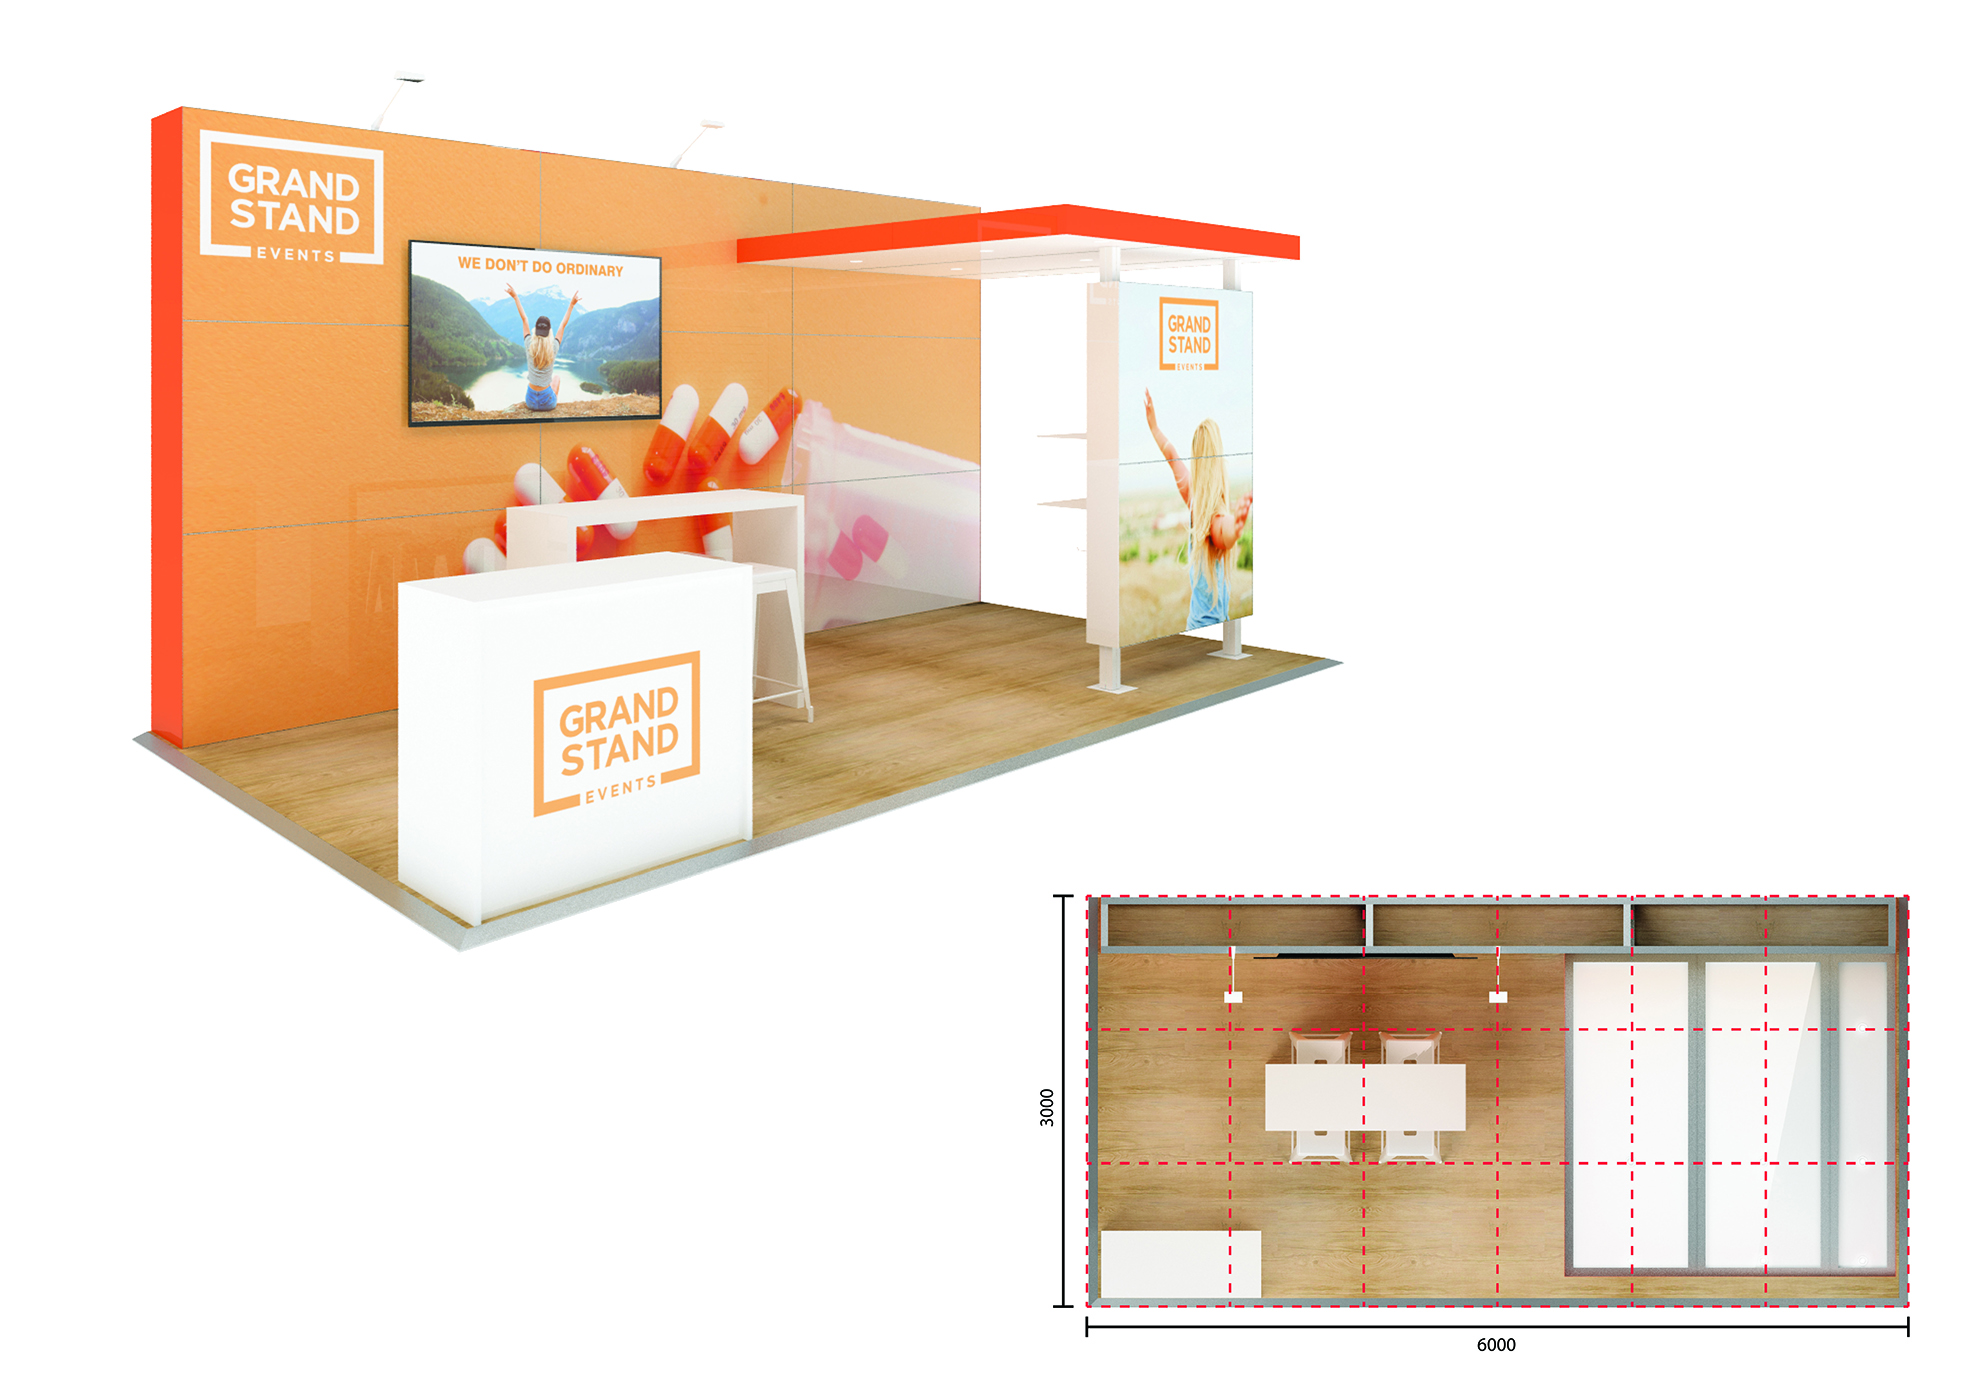 Exhibition stand design - Noosa Beach